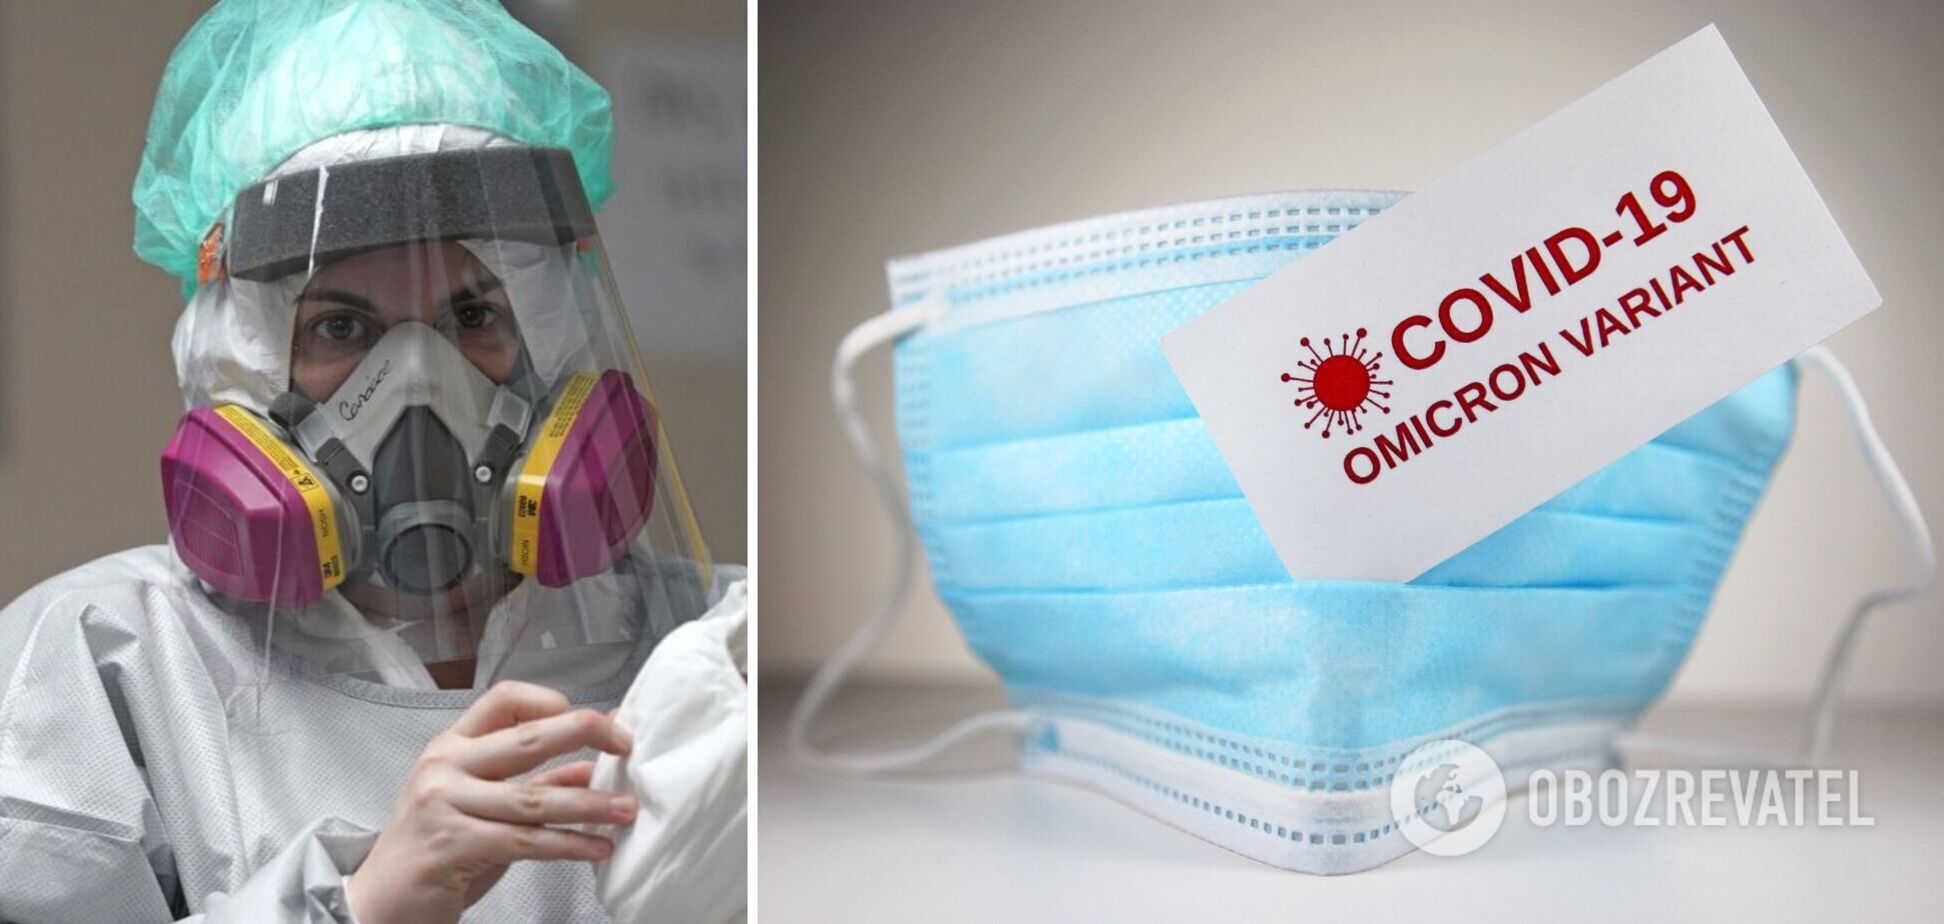 Хороша новина: Омікрон, можливо, переведе коронавірус у звичний сезонний грип